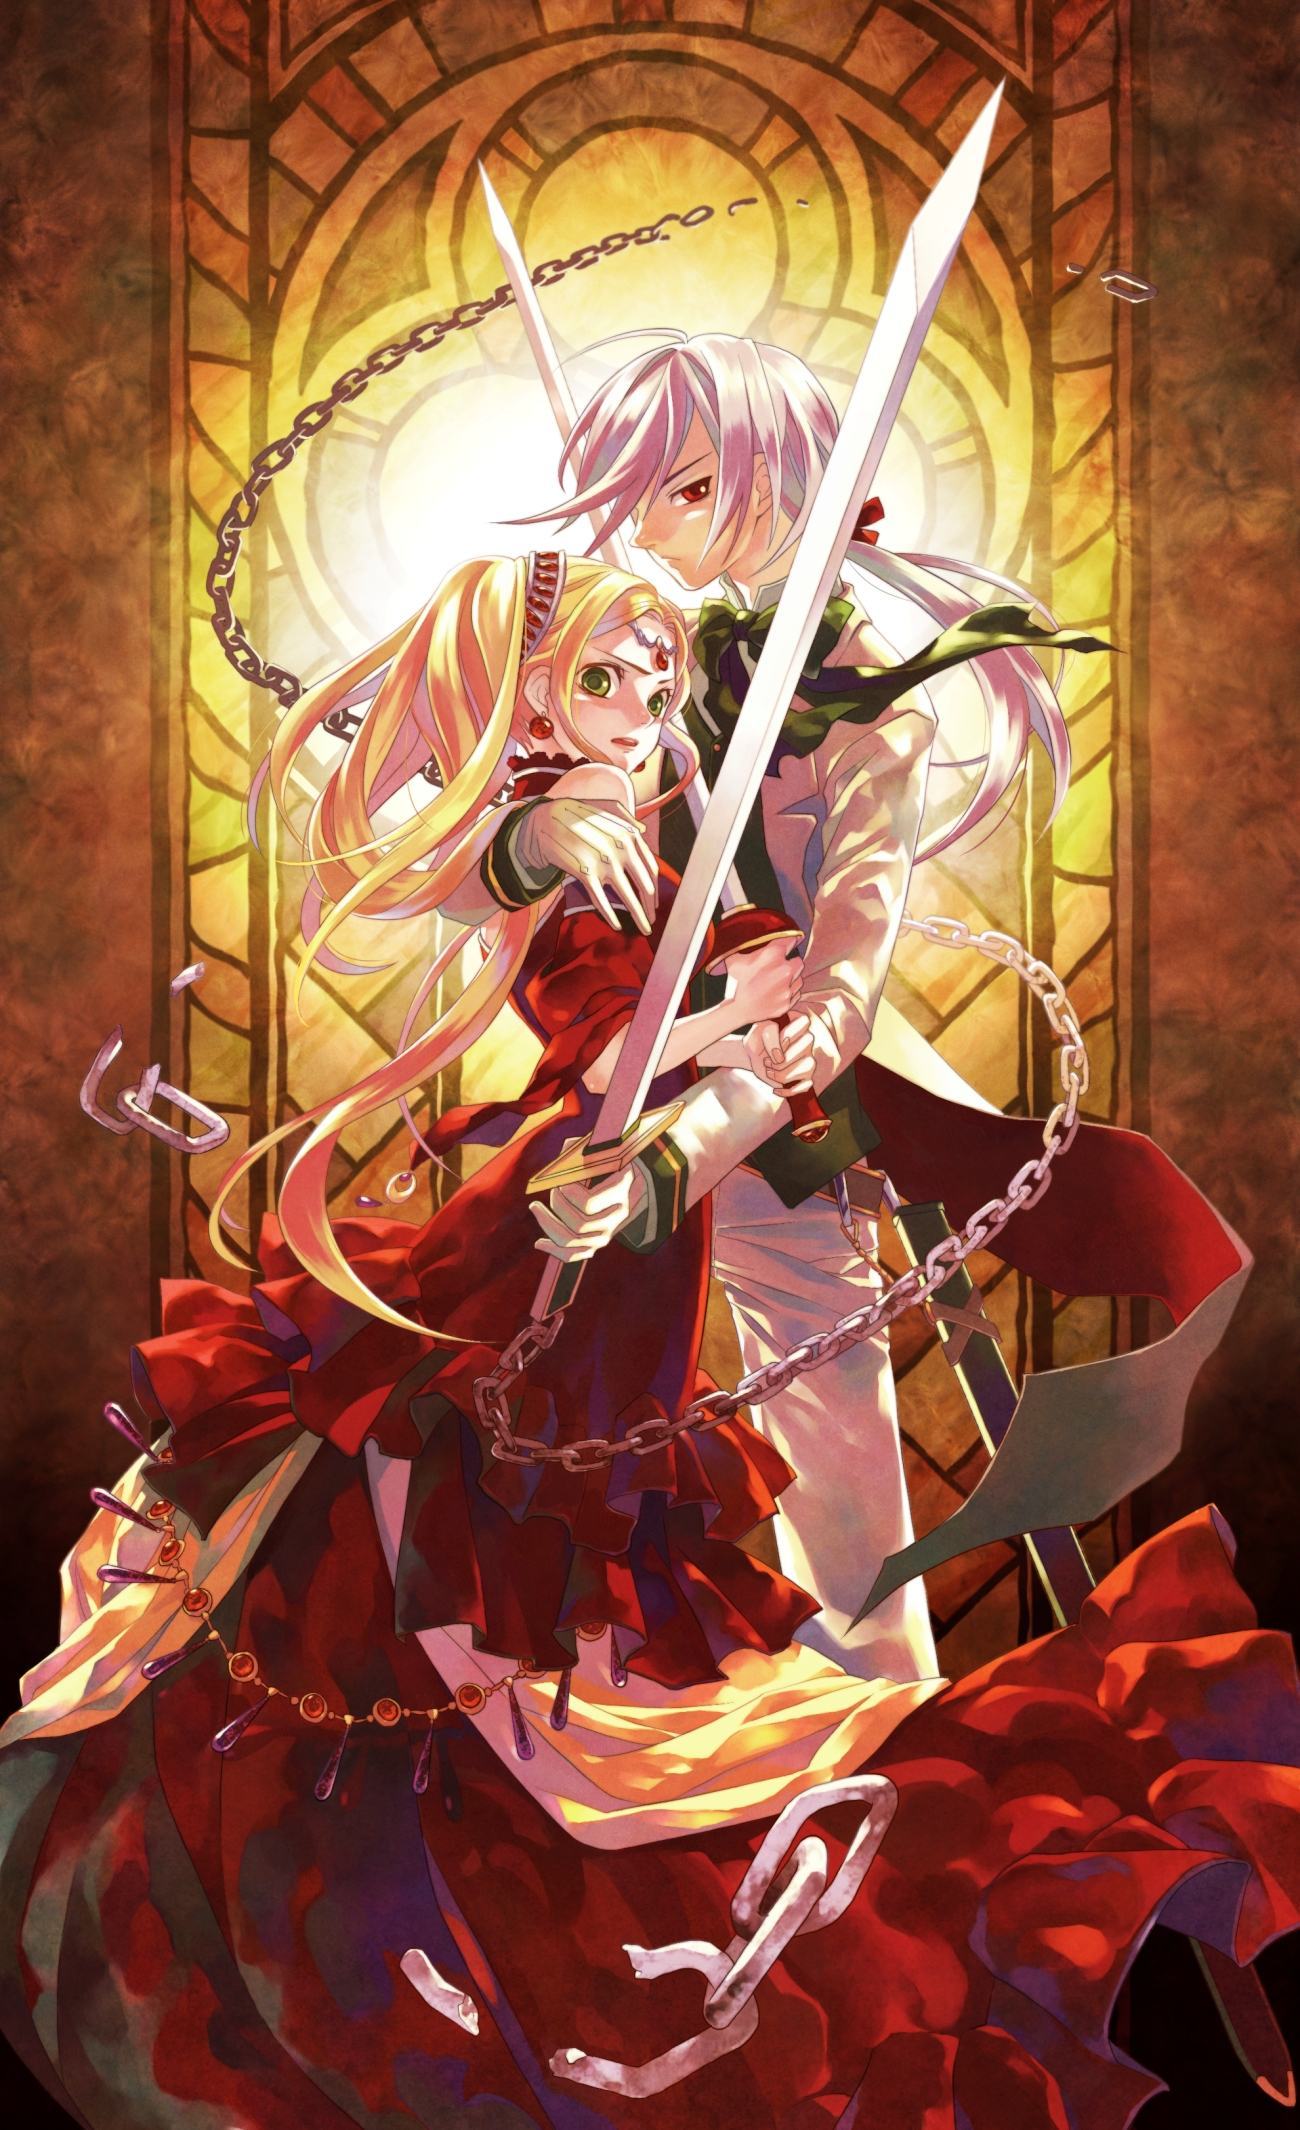 Tranh anime công chúa và hiệp sĩ cầm kiếm